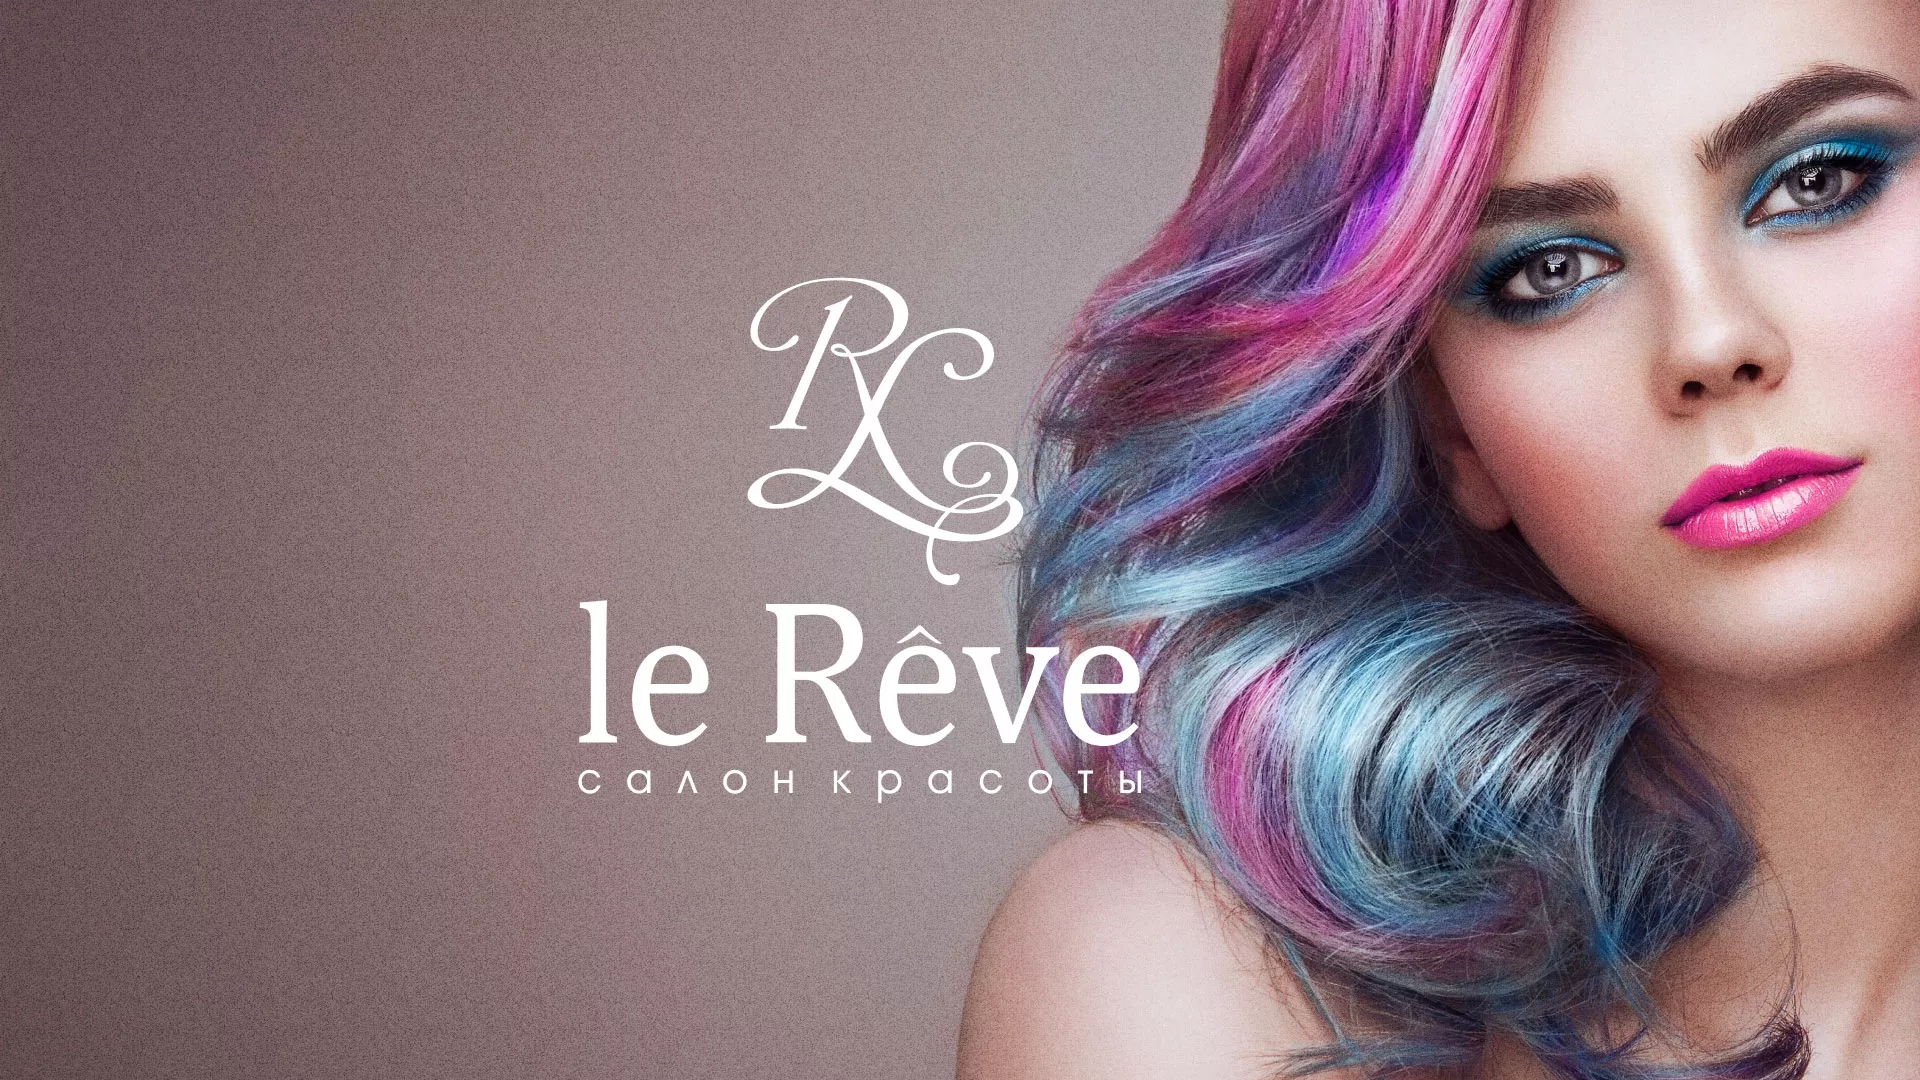 Создание сайта для салона красоты «Le Reve» в Палласовке